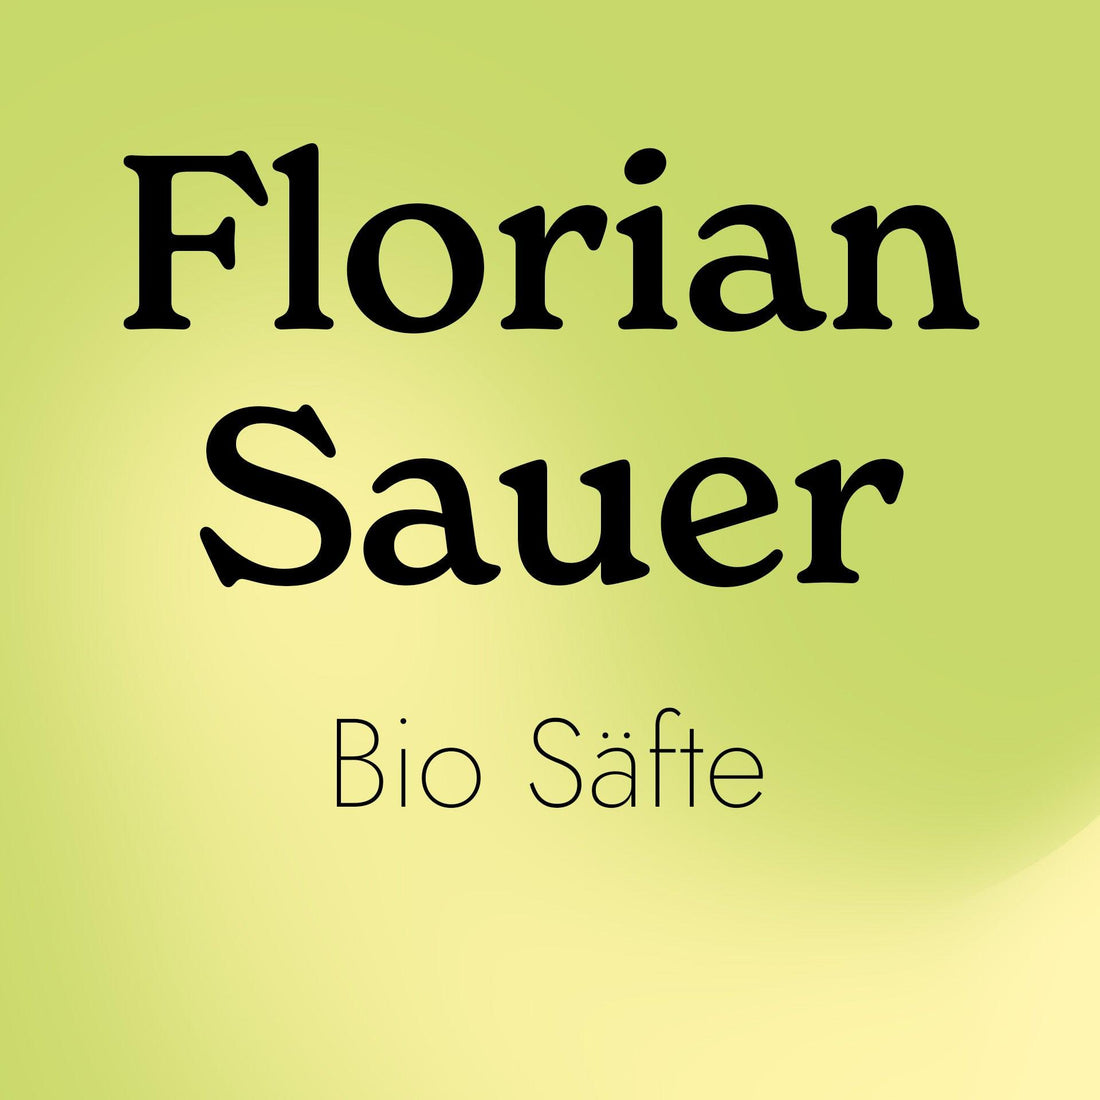 Bio-Säfte zum Saftfasten mit Florian Sauer - Bio Saft